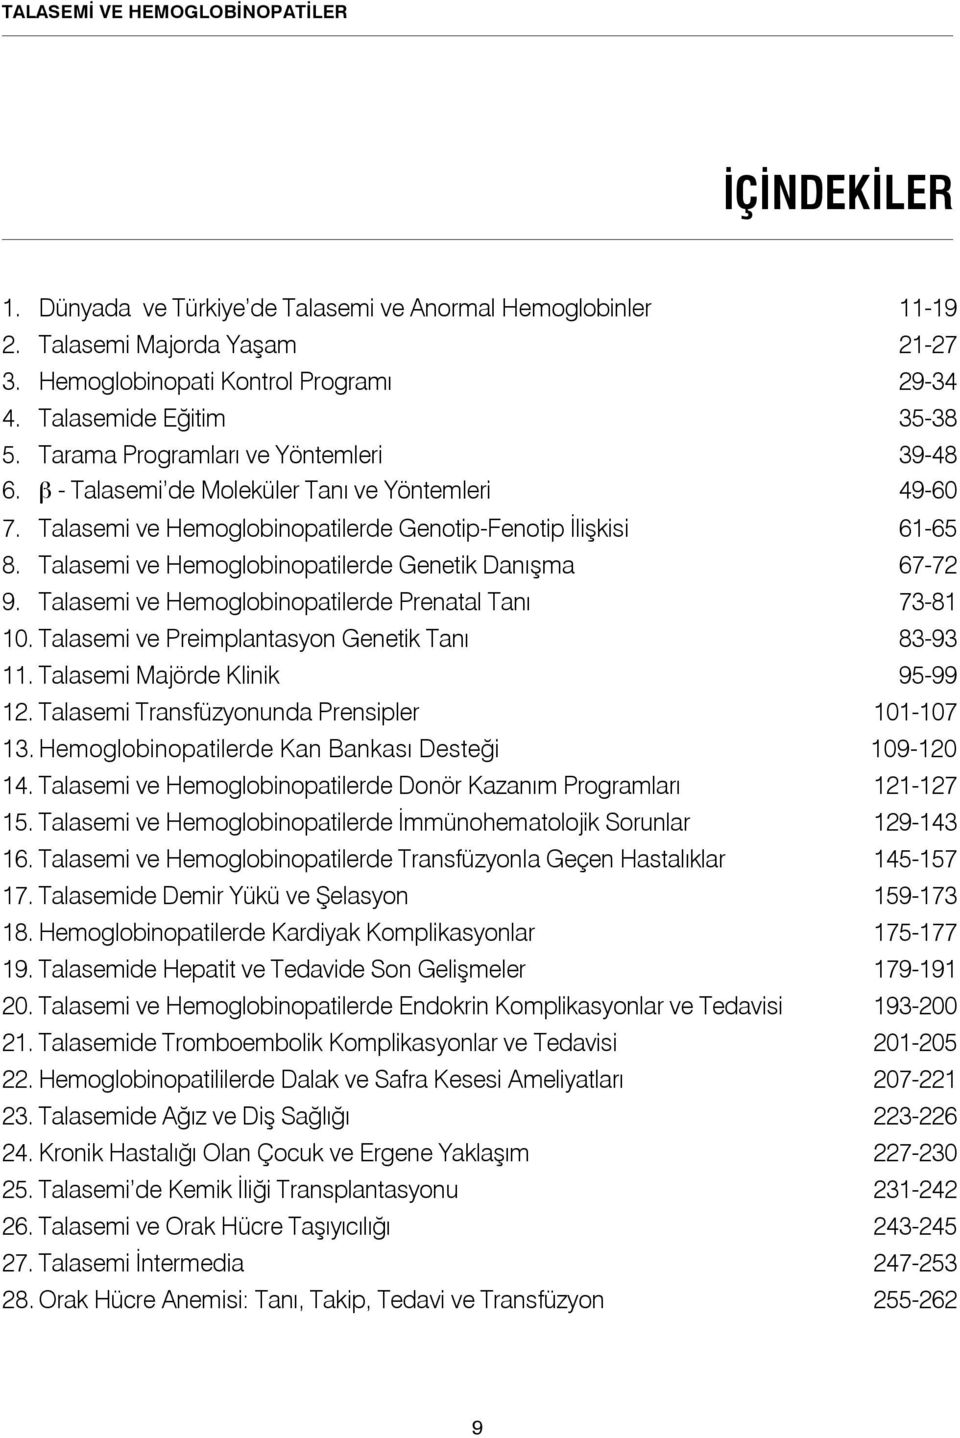 Talasemi ve Hemoglobinopatilerde Genetik Danışma 67-72 9. Talasemi ve Hemoglobinopatilerde Prenatal Tanı 73-81 10. Talasemi ve Preimplantasyon Genetik Tanı 83-93 11. Talasemi Majörde Klinik 95-99 12.